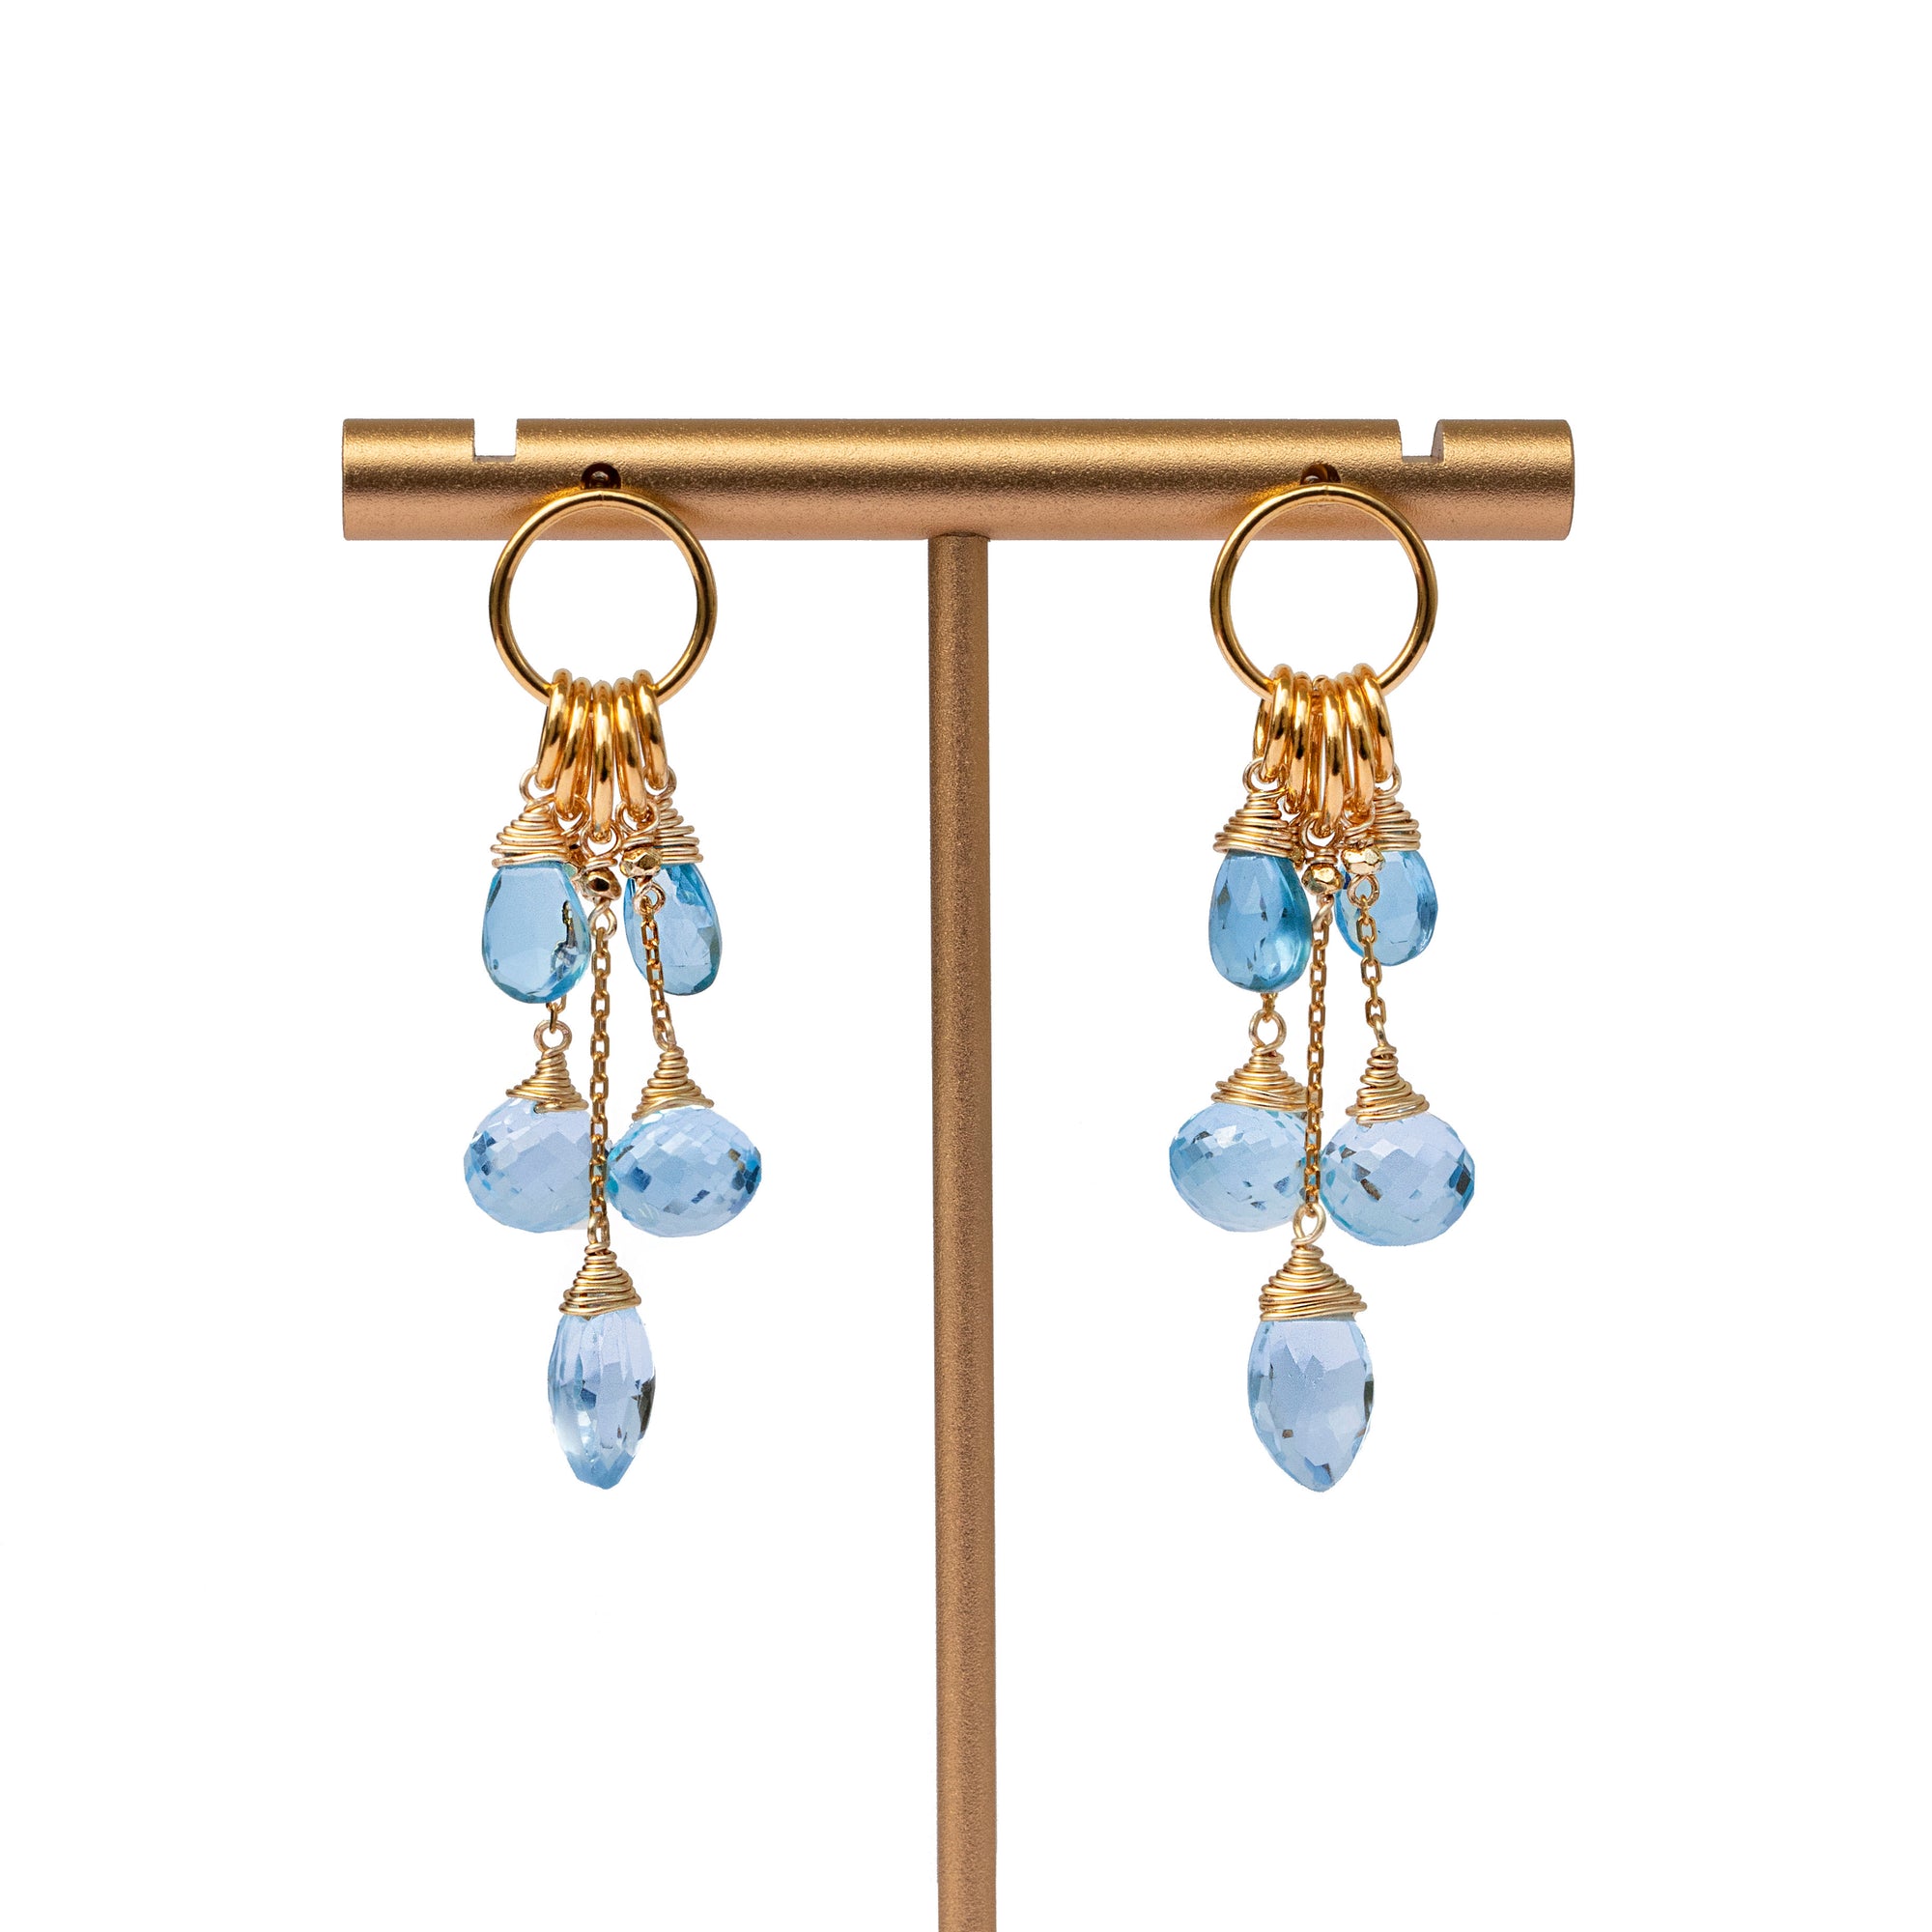 24K Gold Vermeil & Swiss Blue Topaz Charm Earrings